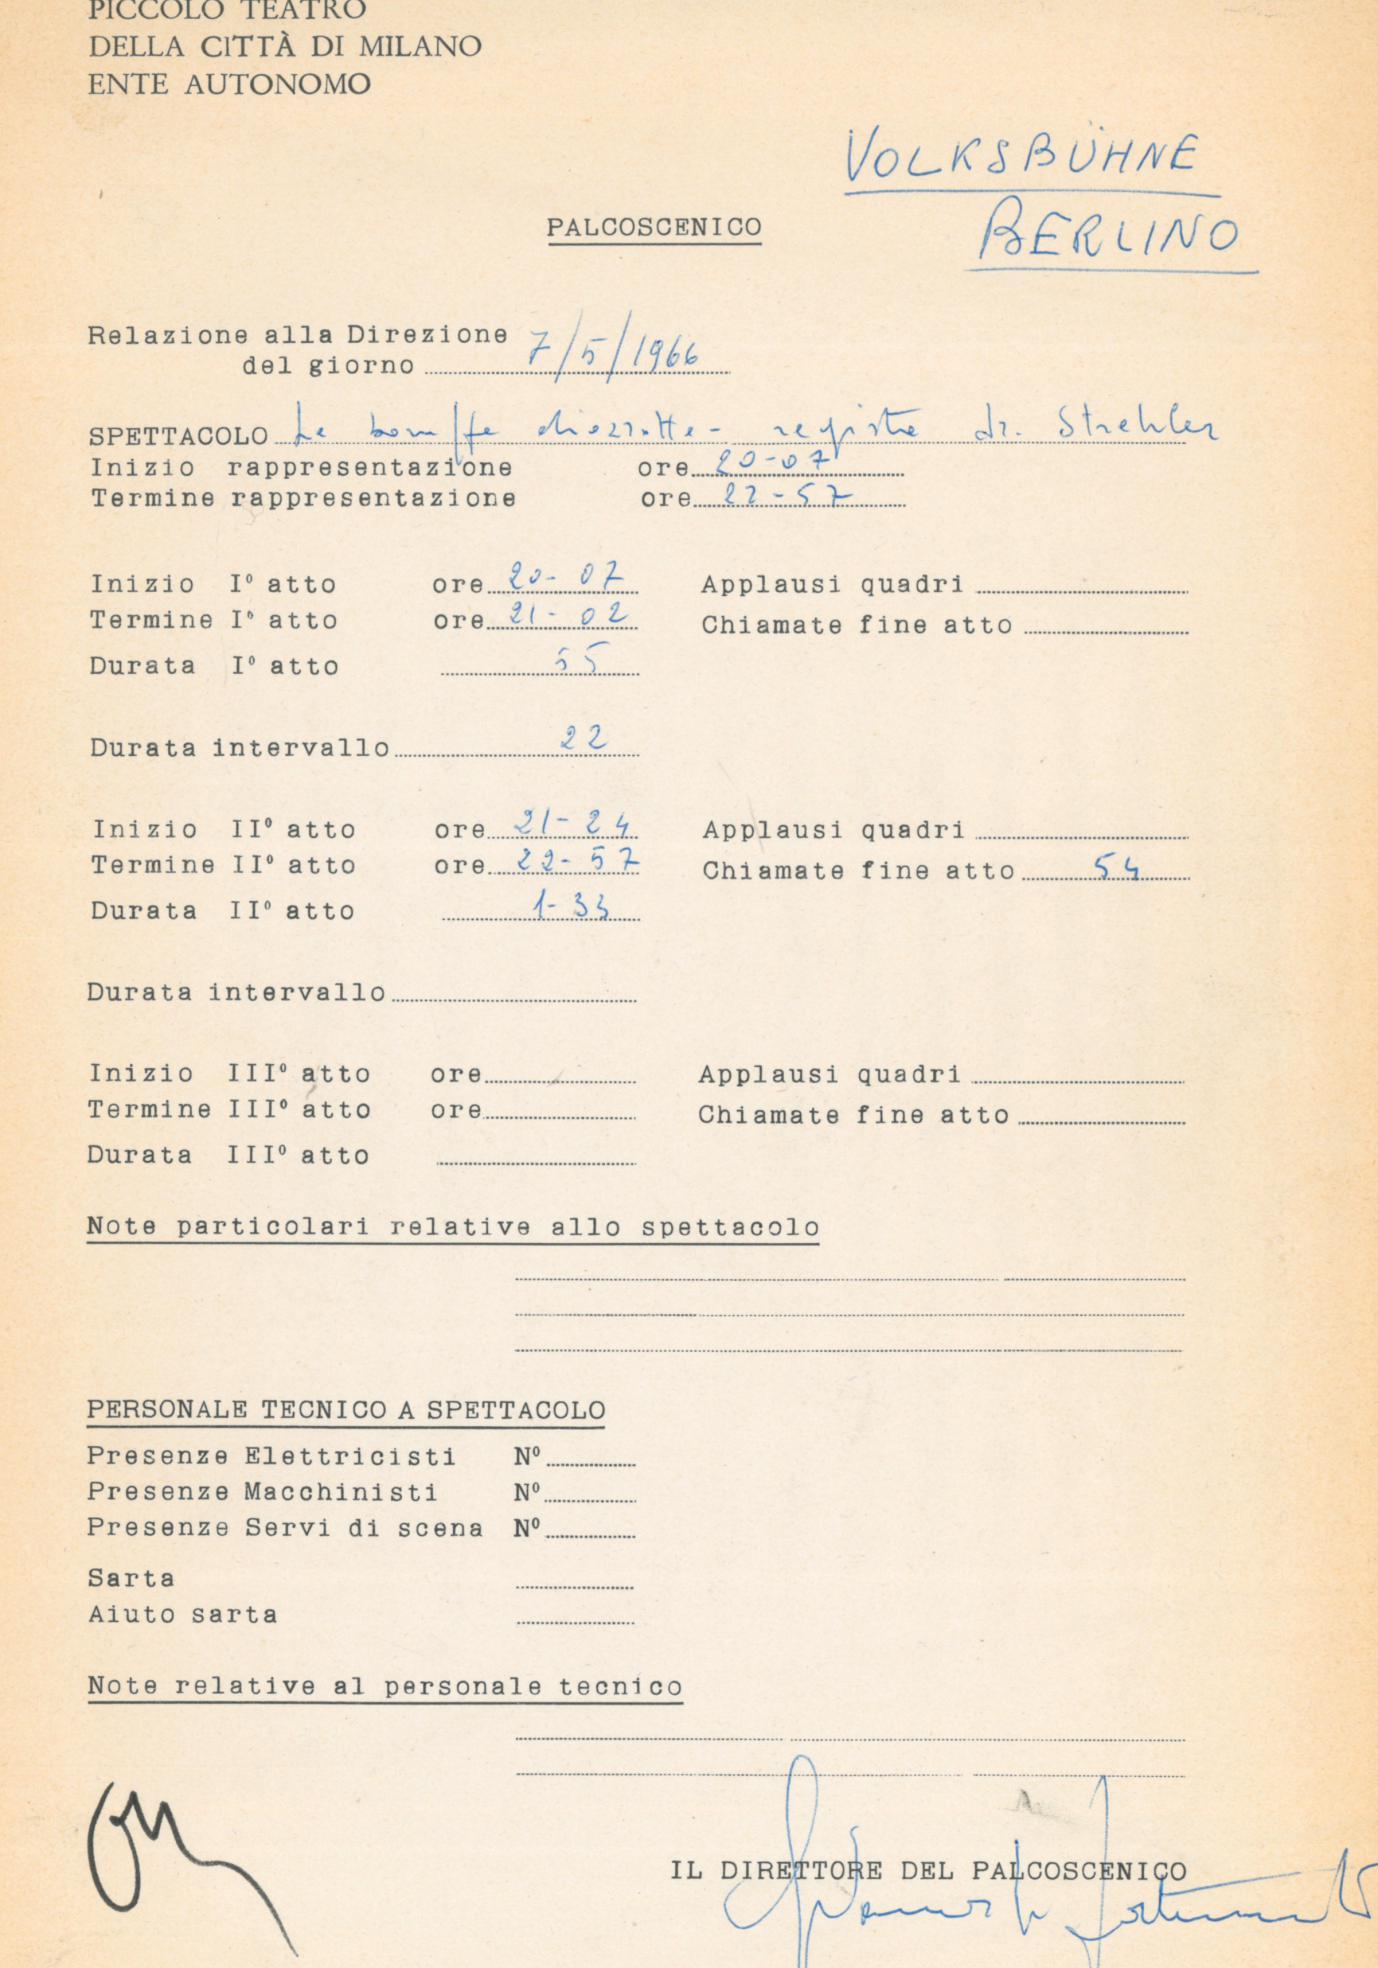 54 chiamate di applausi alla Volksbühne di Berlino, 7 maggio 1966  - Archivio Piccolo Teatro di Milano